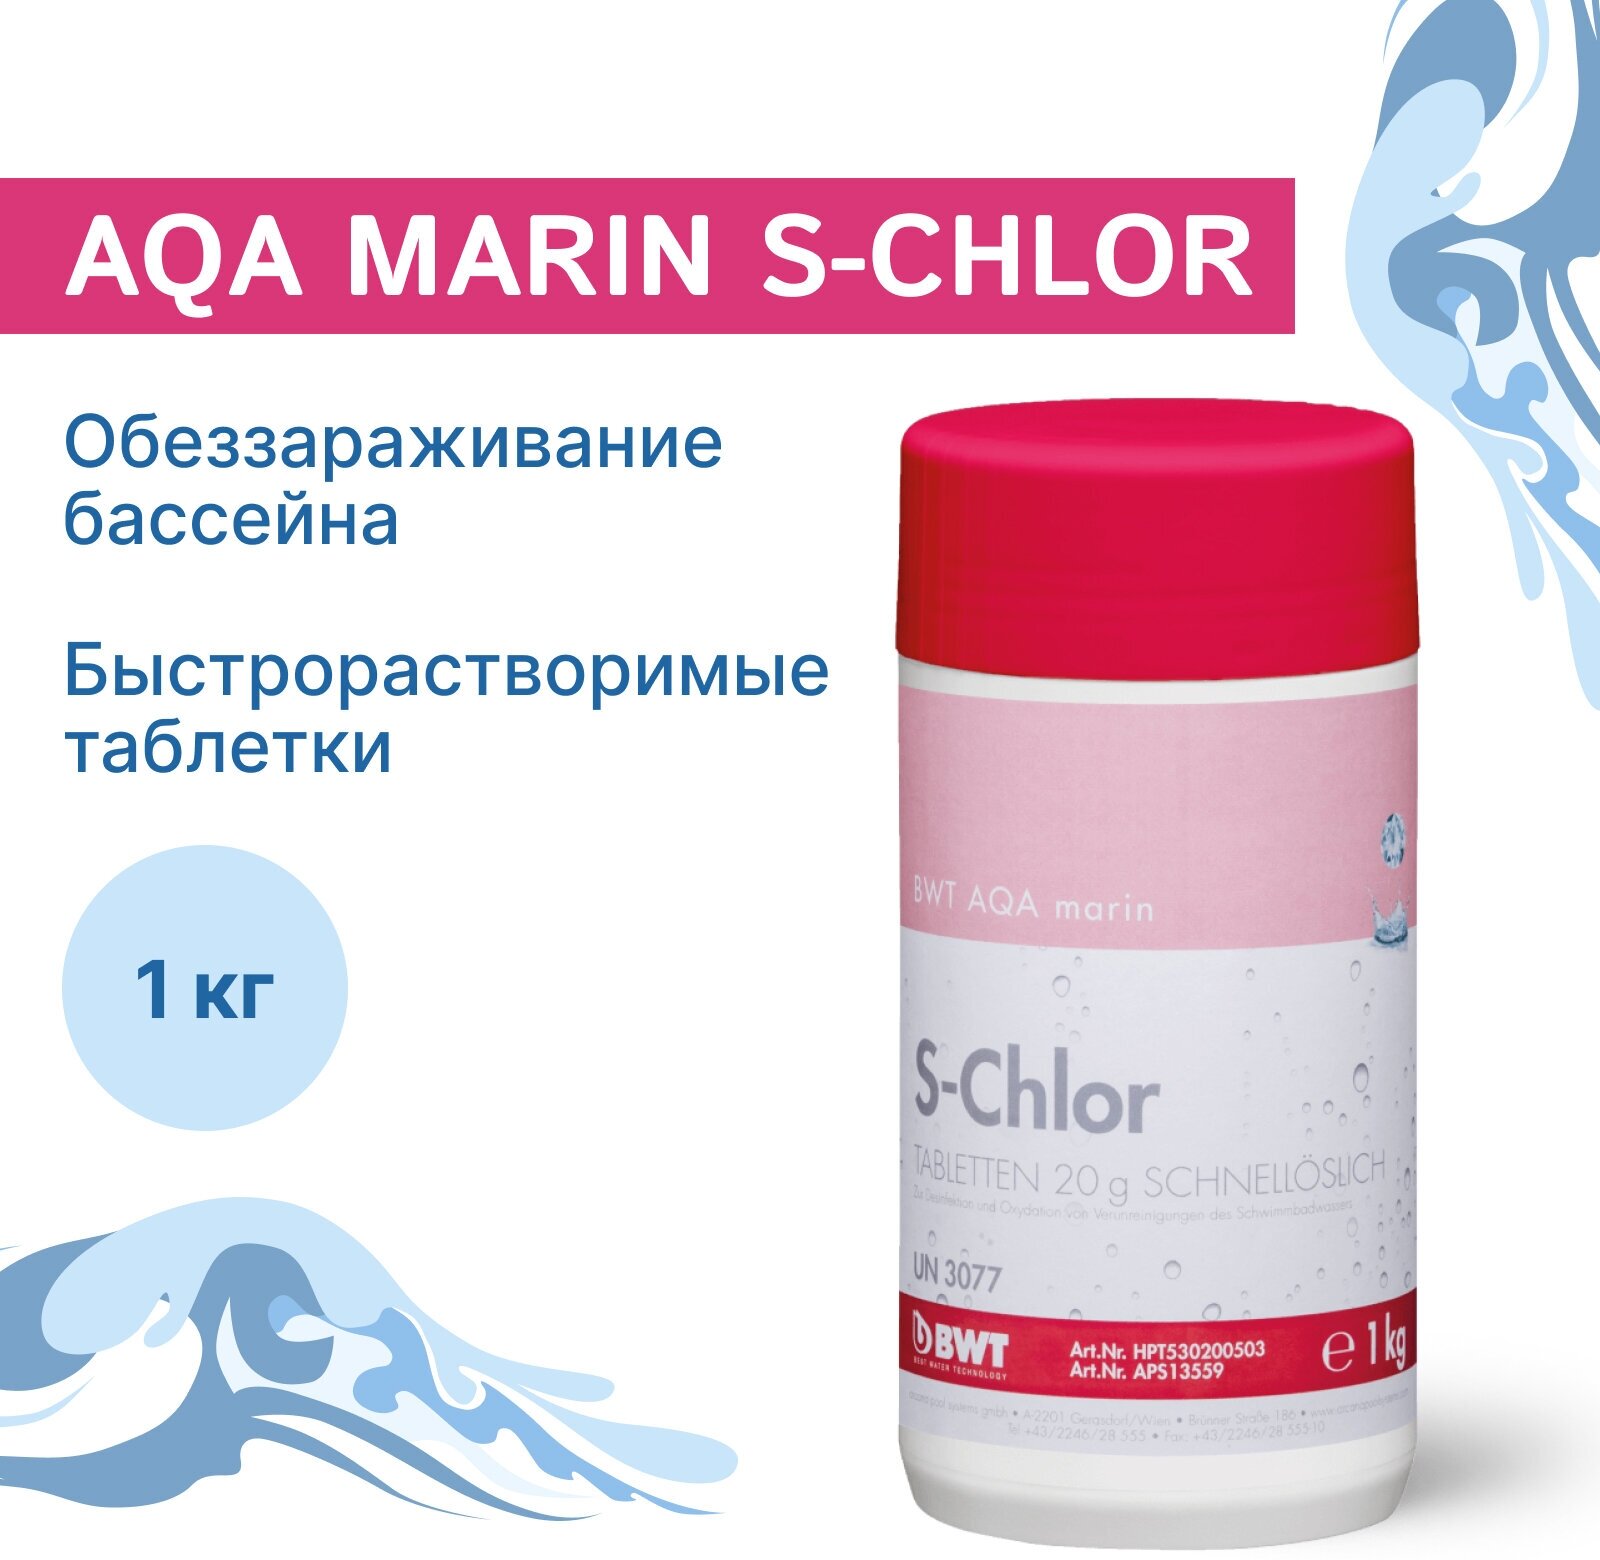 Быстрорастворимые таблетки BWT AQA marin S-Chlor 1кг